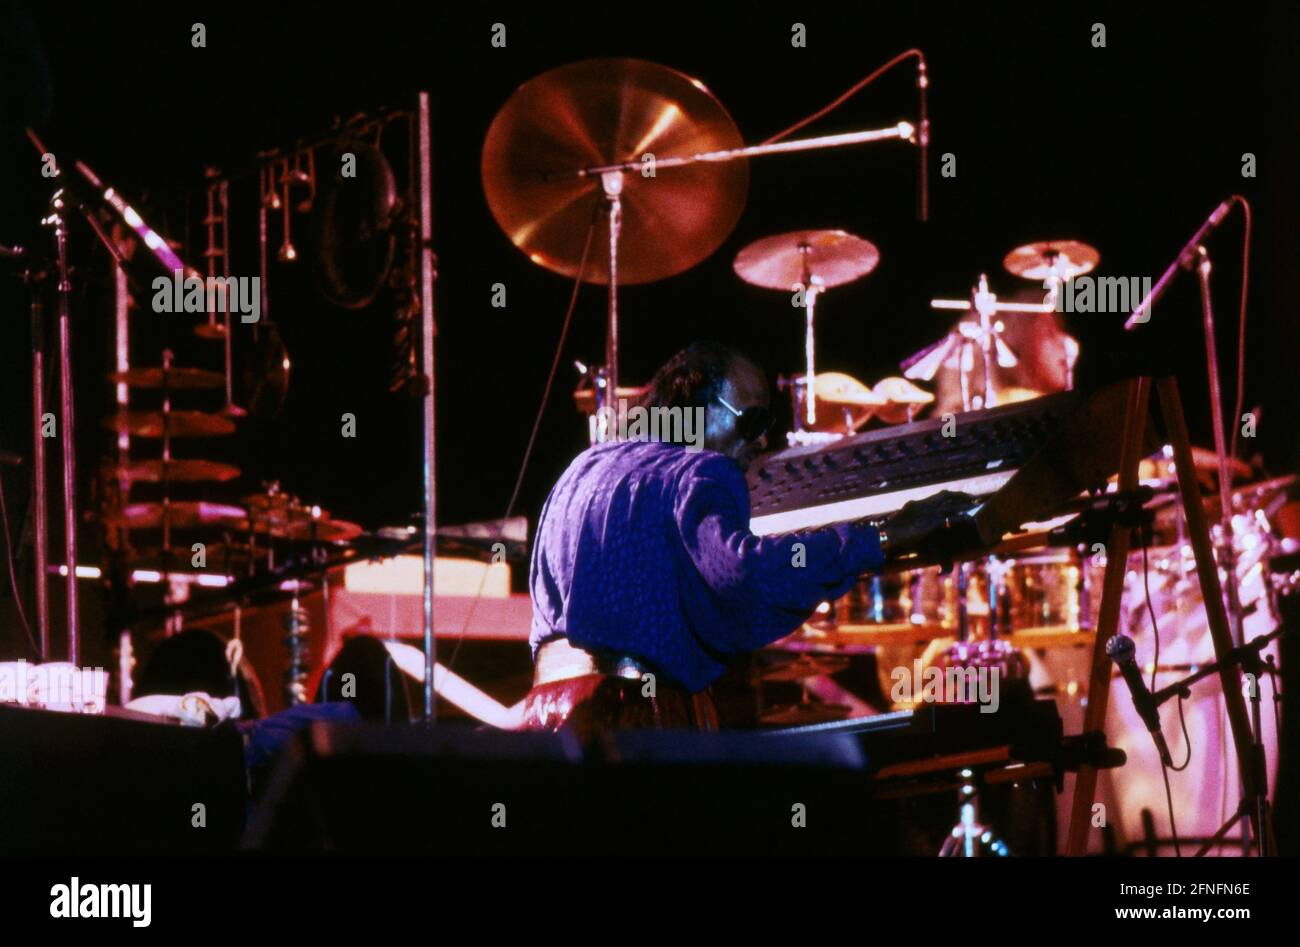 Miles Davis, amerikanischer Jazztrompeter, Flügelhornist, Komponist und bandleader, Am Keyboard, 1989. Miles Davis, trombettista jazz americano, suonatore di fiugelhorn, compositore e bandleader, sulla tastiera, 1989. Foto Stock